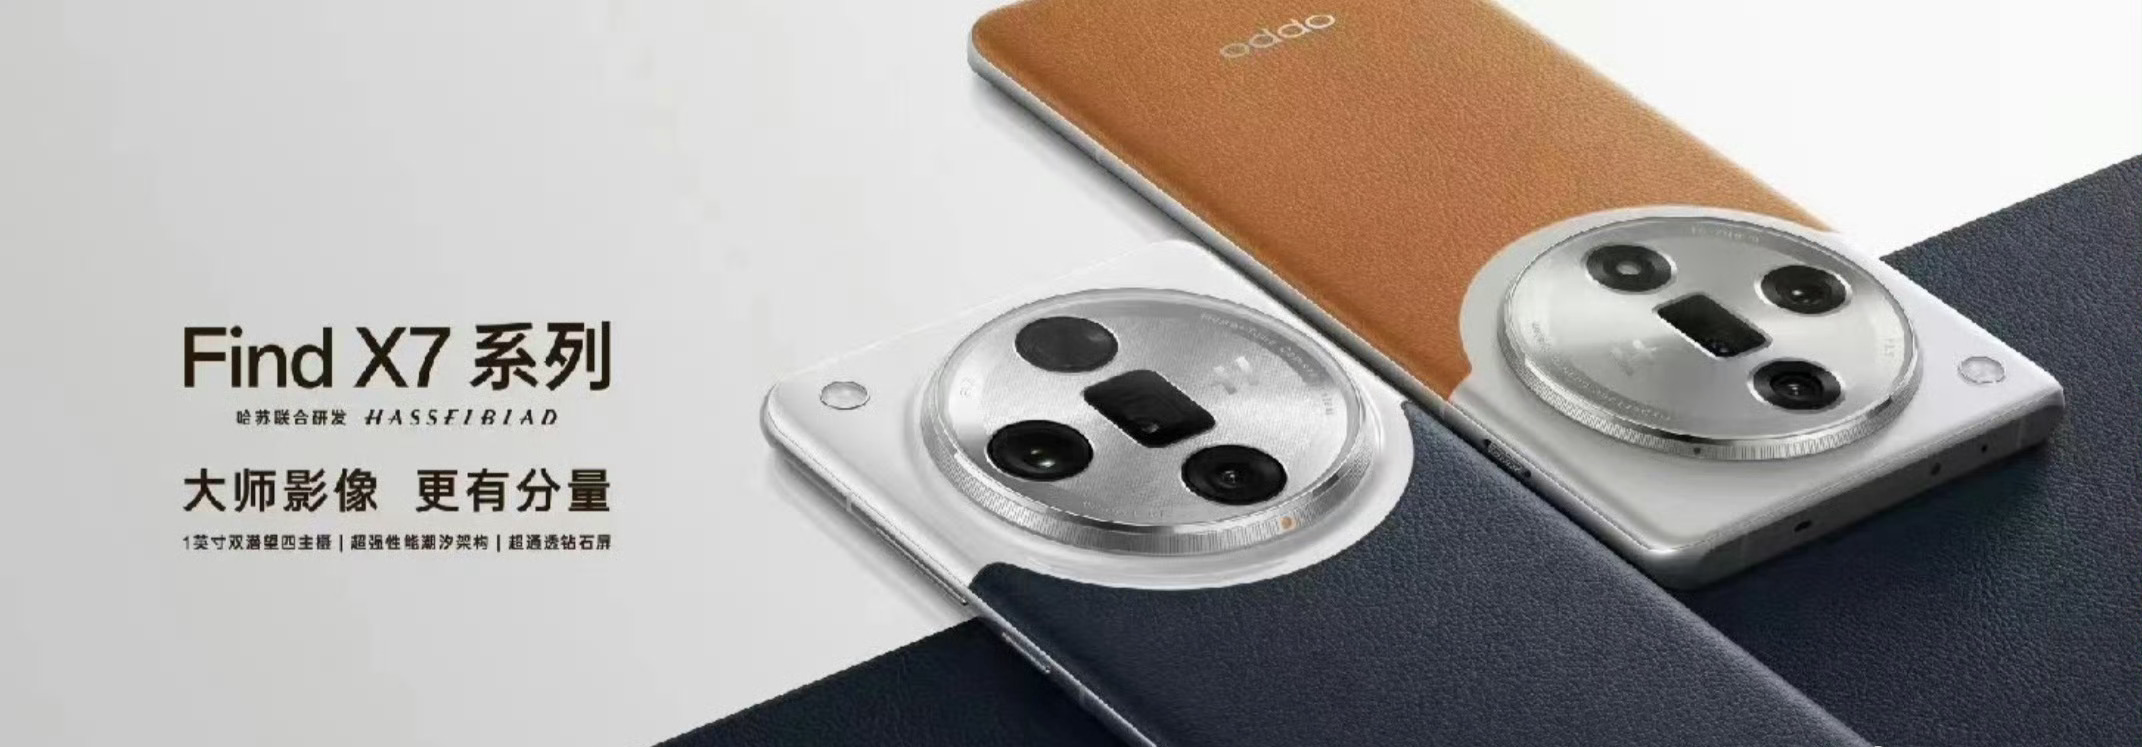 Crédito da imagem - Weibo - Vazamentos recentes lançam nova luz sobre as especificações e design da câmera da série Oppo Find X7